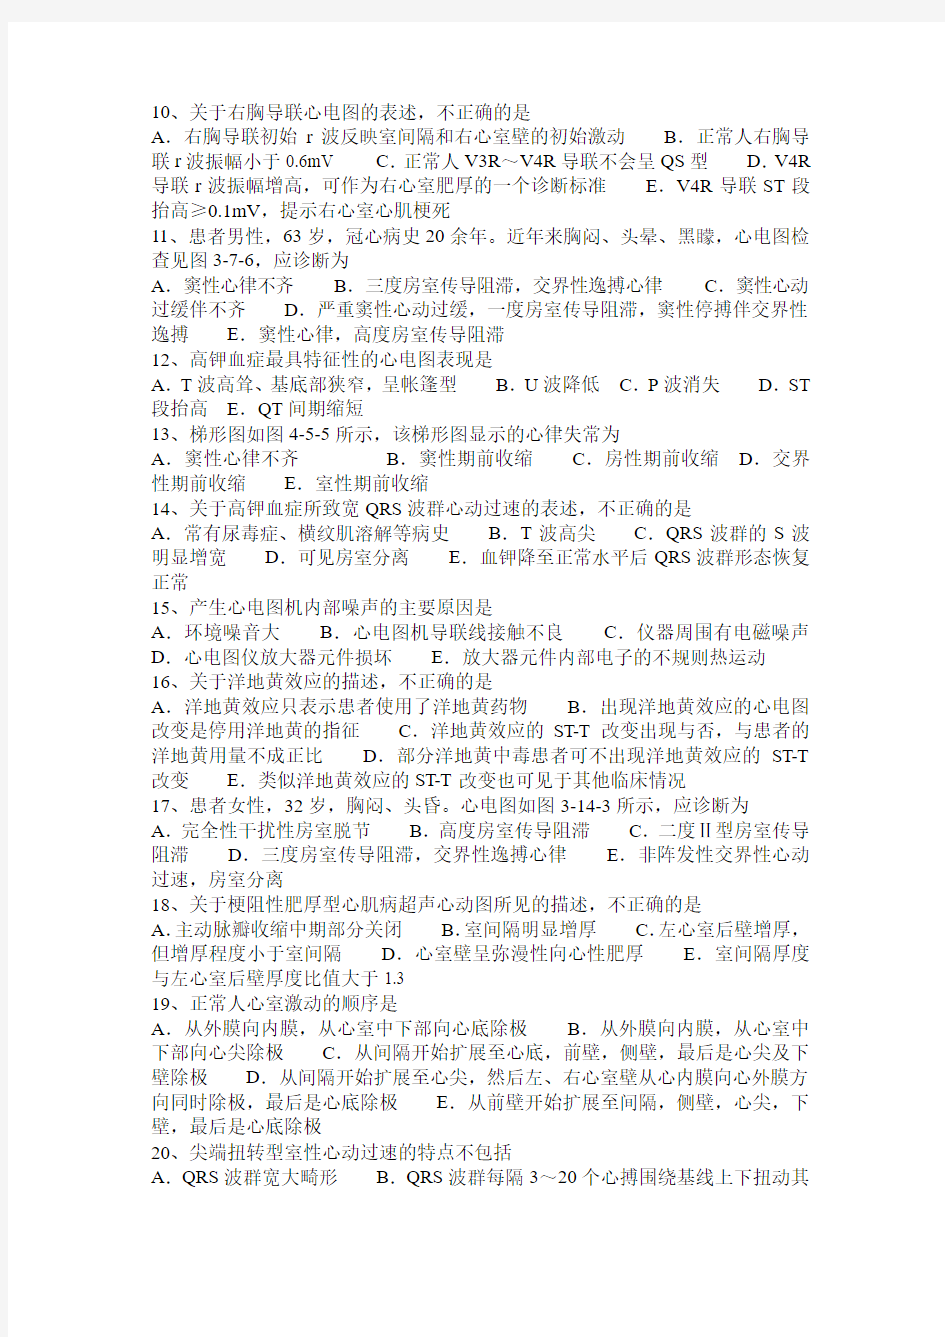 2016年上半年台湾省心电图技术(中级)基础知识考试试卷